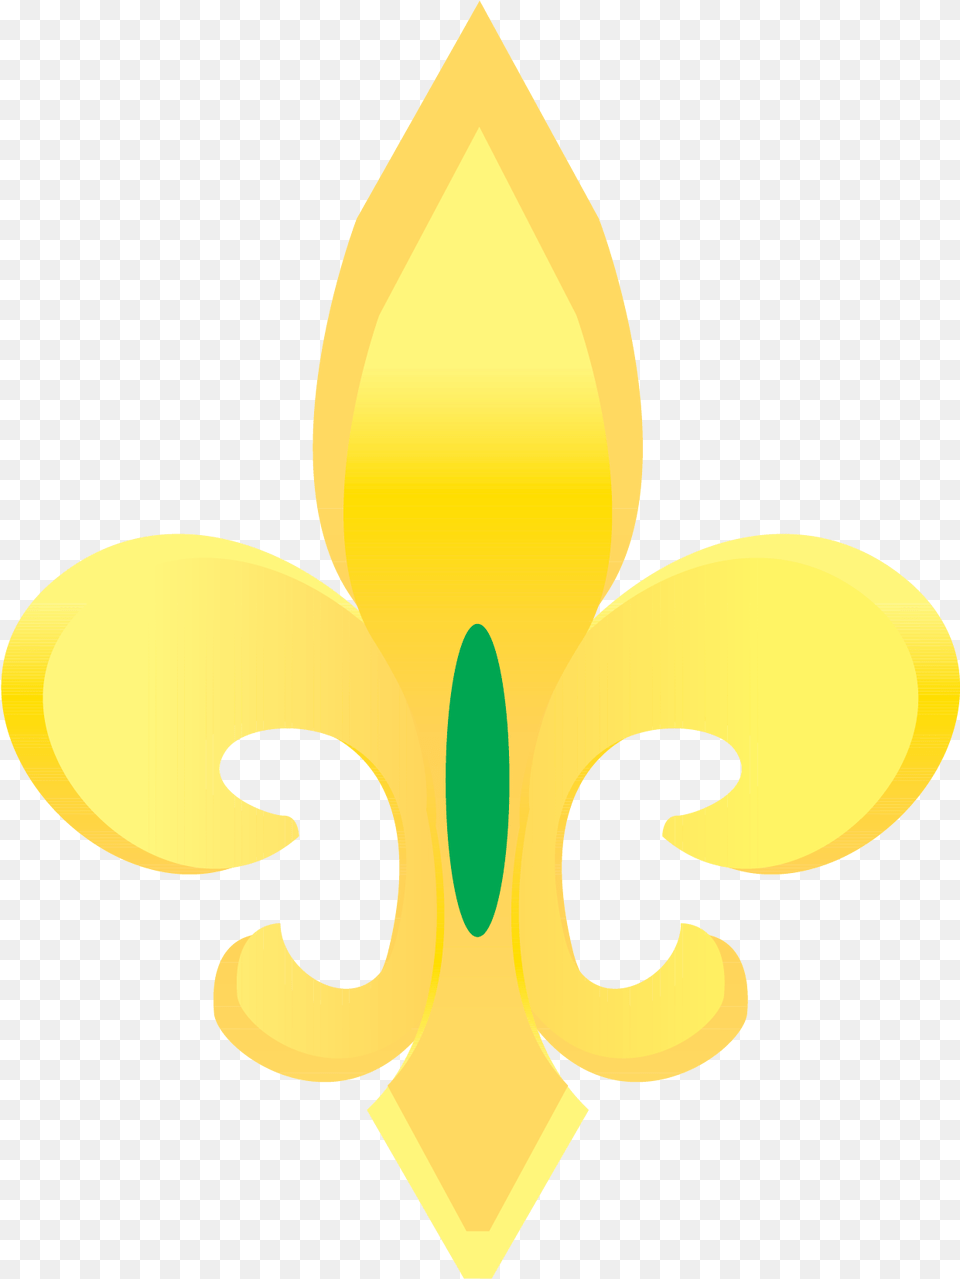 Gold Fleur De Lis Vector Clip Art Fleur De Lis Gold Free Png Download